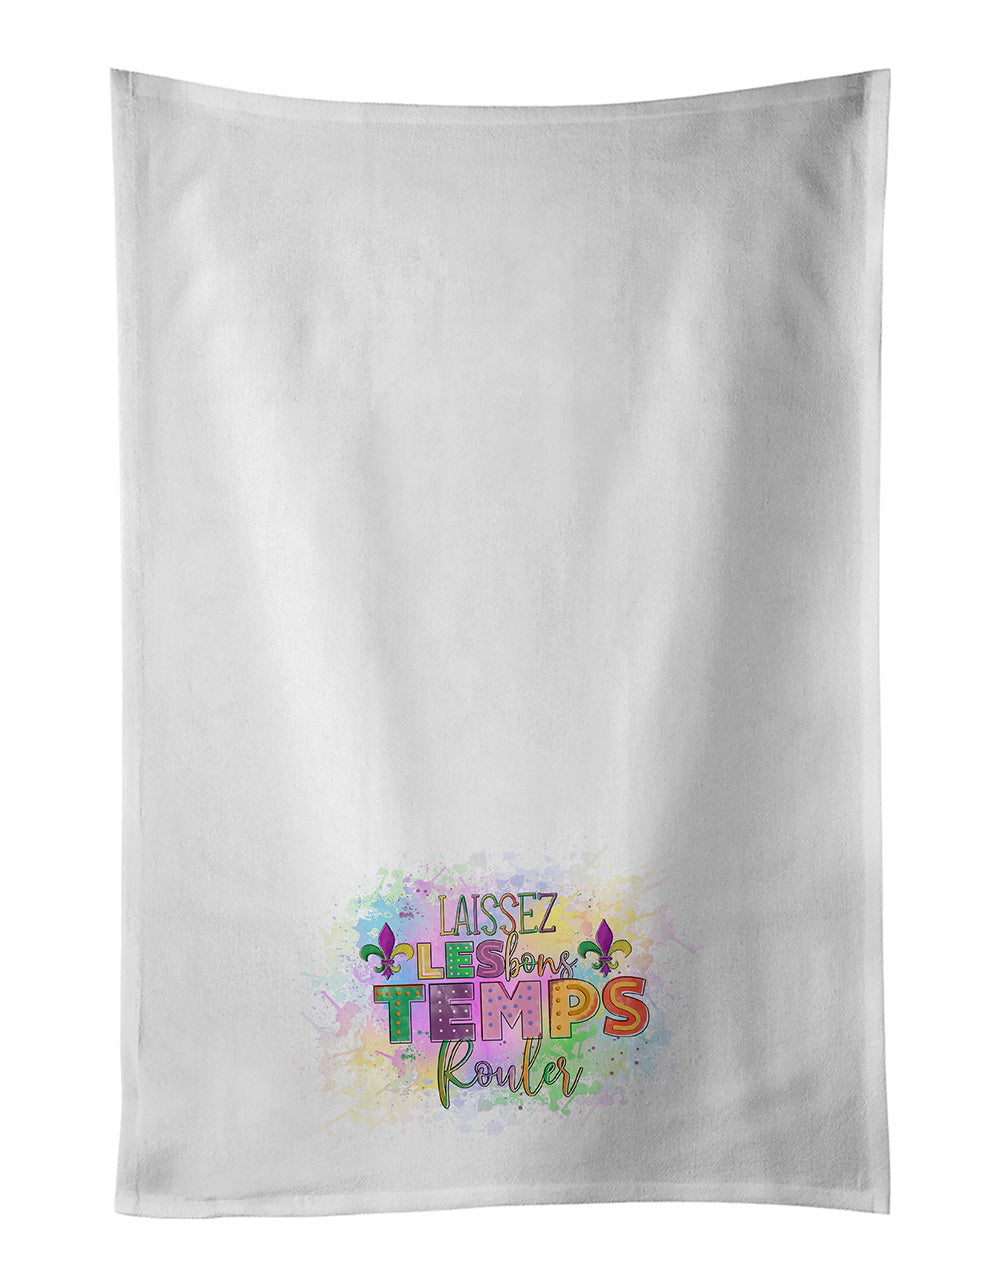 Buy this Laissex Les bons Temps Rouler Mardi Gras White Kitchen Towel Set of 2 Dish Towels